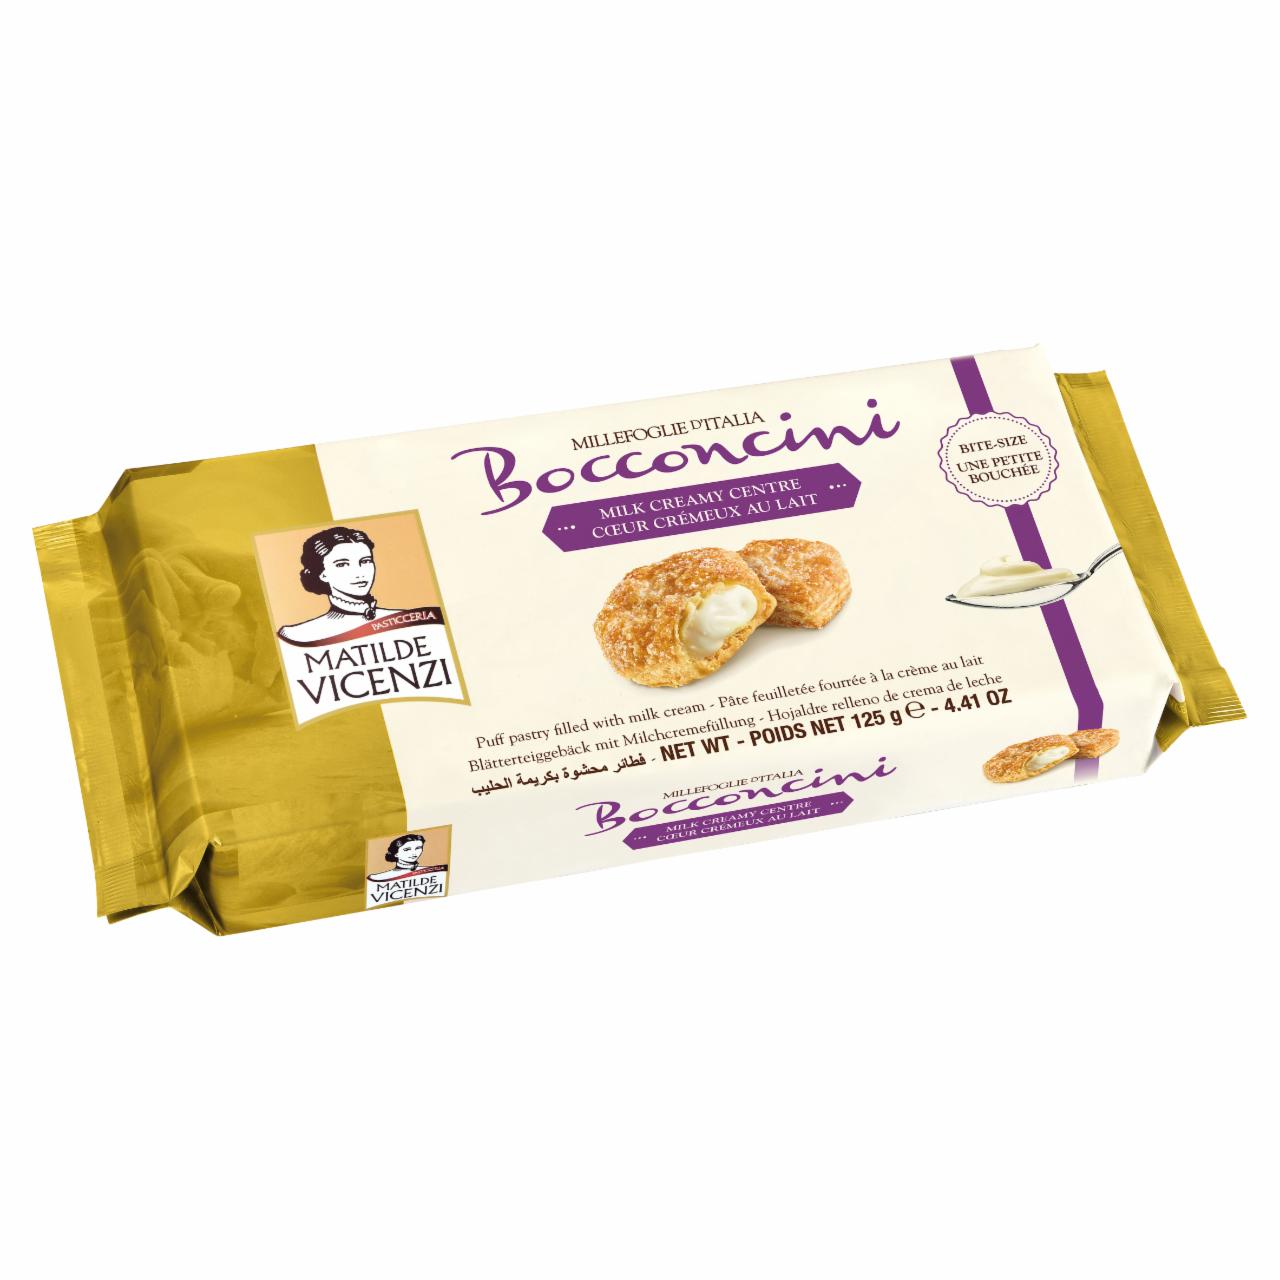 Képek - Vicenzi Bocconcini Milk olasz leveles tésztából készült sütemények tejkrémmel töltve 16 db 125 g